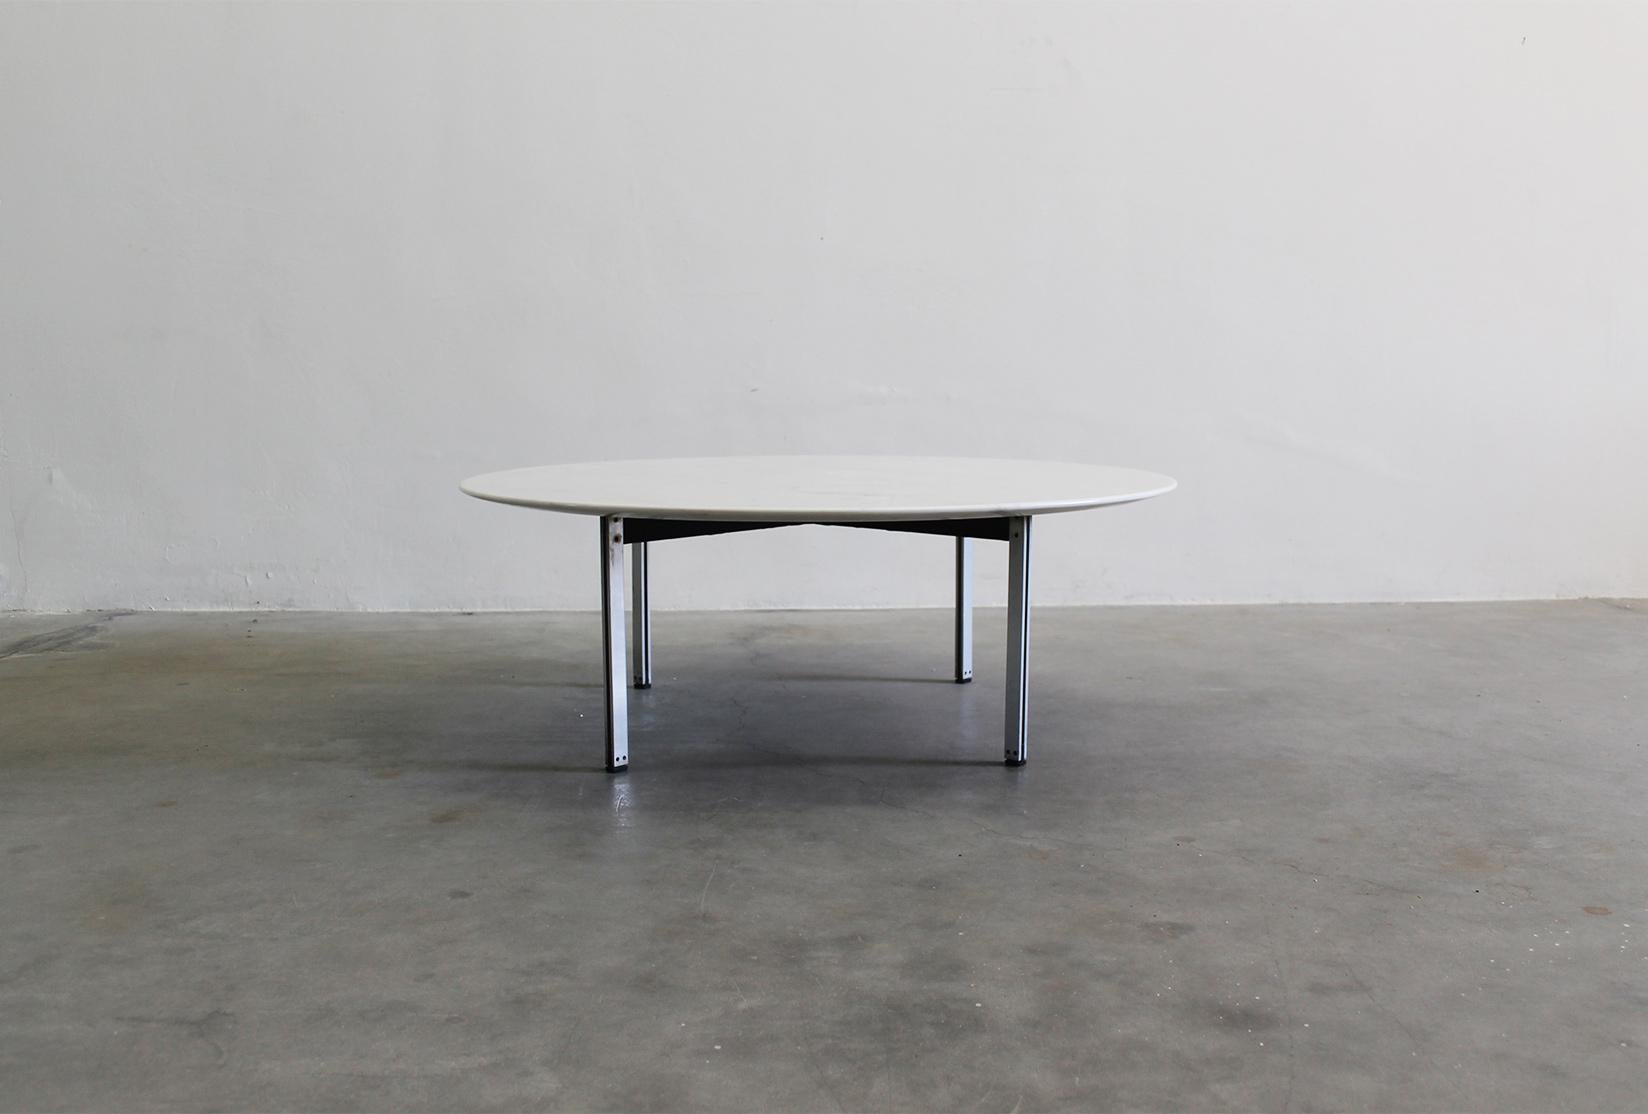 Table basse avec un plateau rond en marbre blanc et quatre pieds en métal de la série Parallel Bar, conçue par Florence Knoll et fabriquée par Knoll International dans les années 1950. 

Née d'un boulanger et orpheline à l'âge de douze ans,